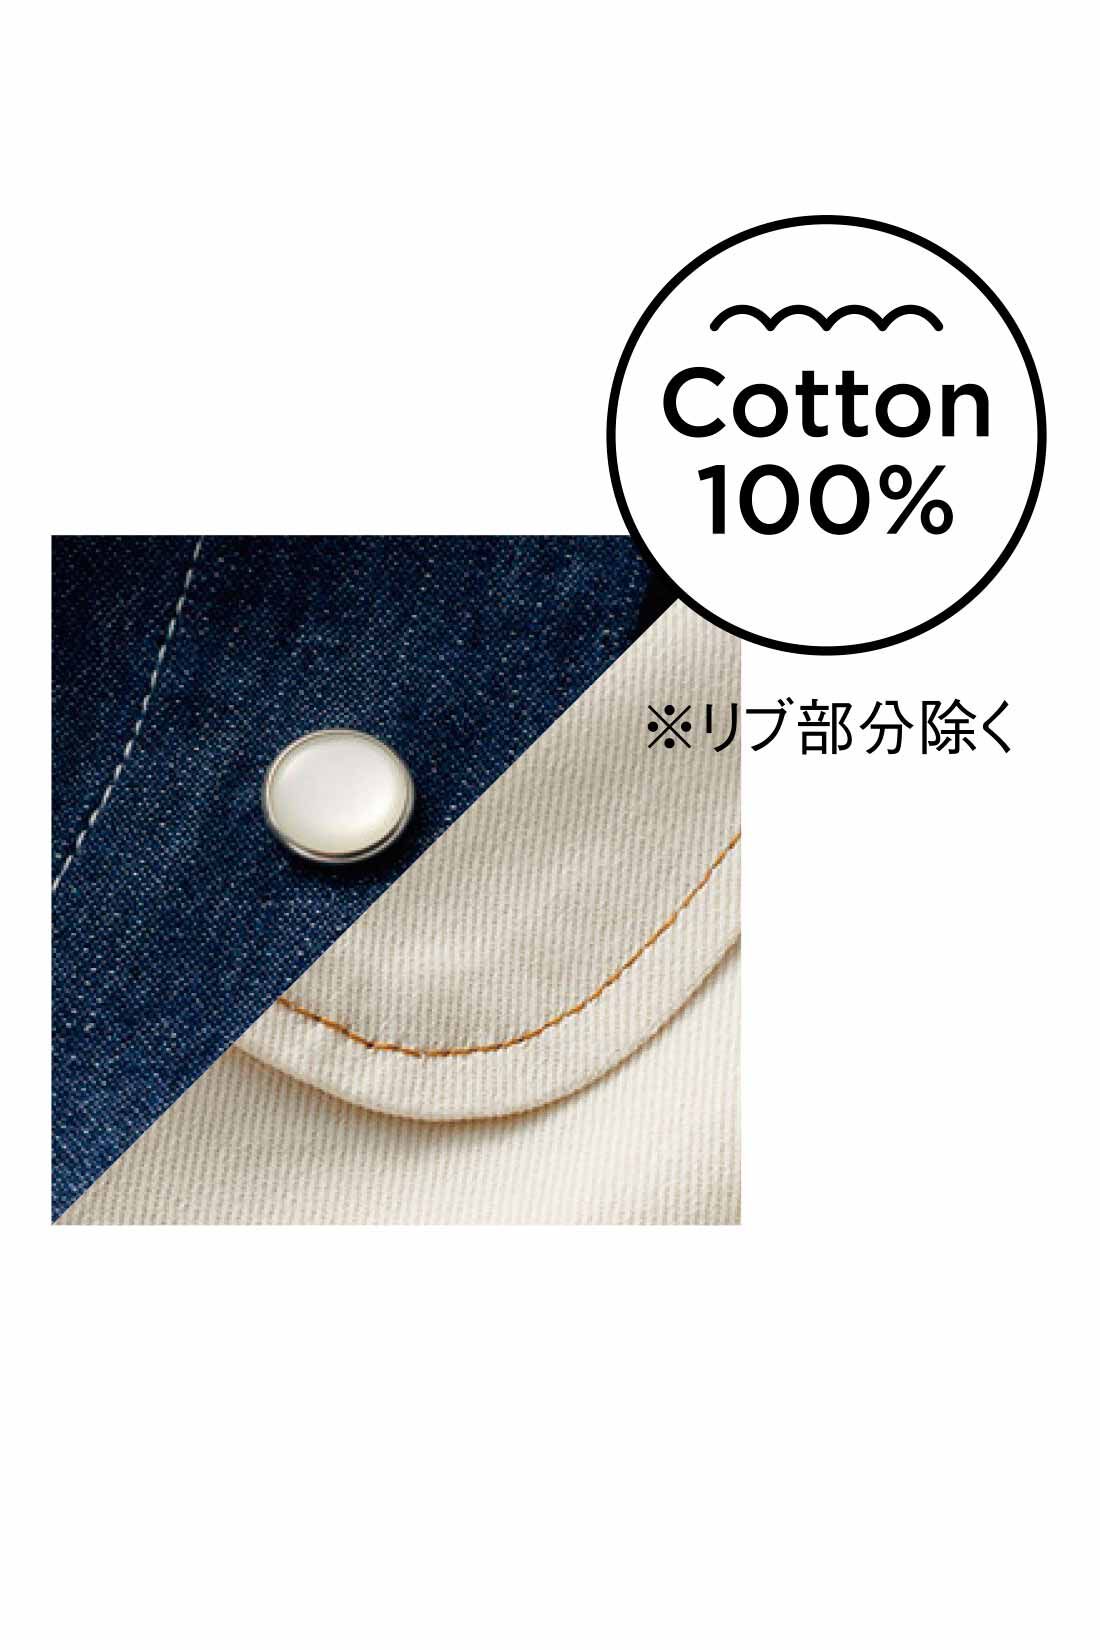 Live in  comfort|リブ イン コンフォート ばさっとはおれる 軽やかコットンシャツジャケット 〈オフホワイト〉|綿100％素材に映える、配色ステッチやドットボタンをアクセントに。